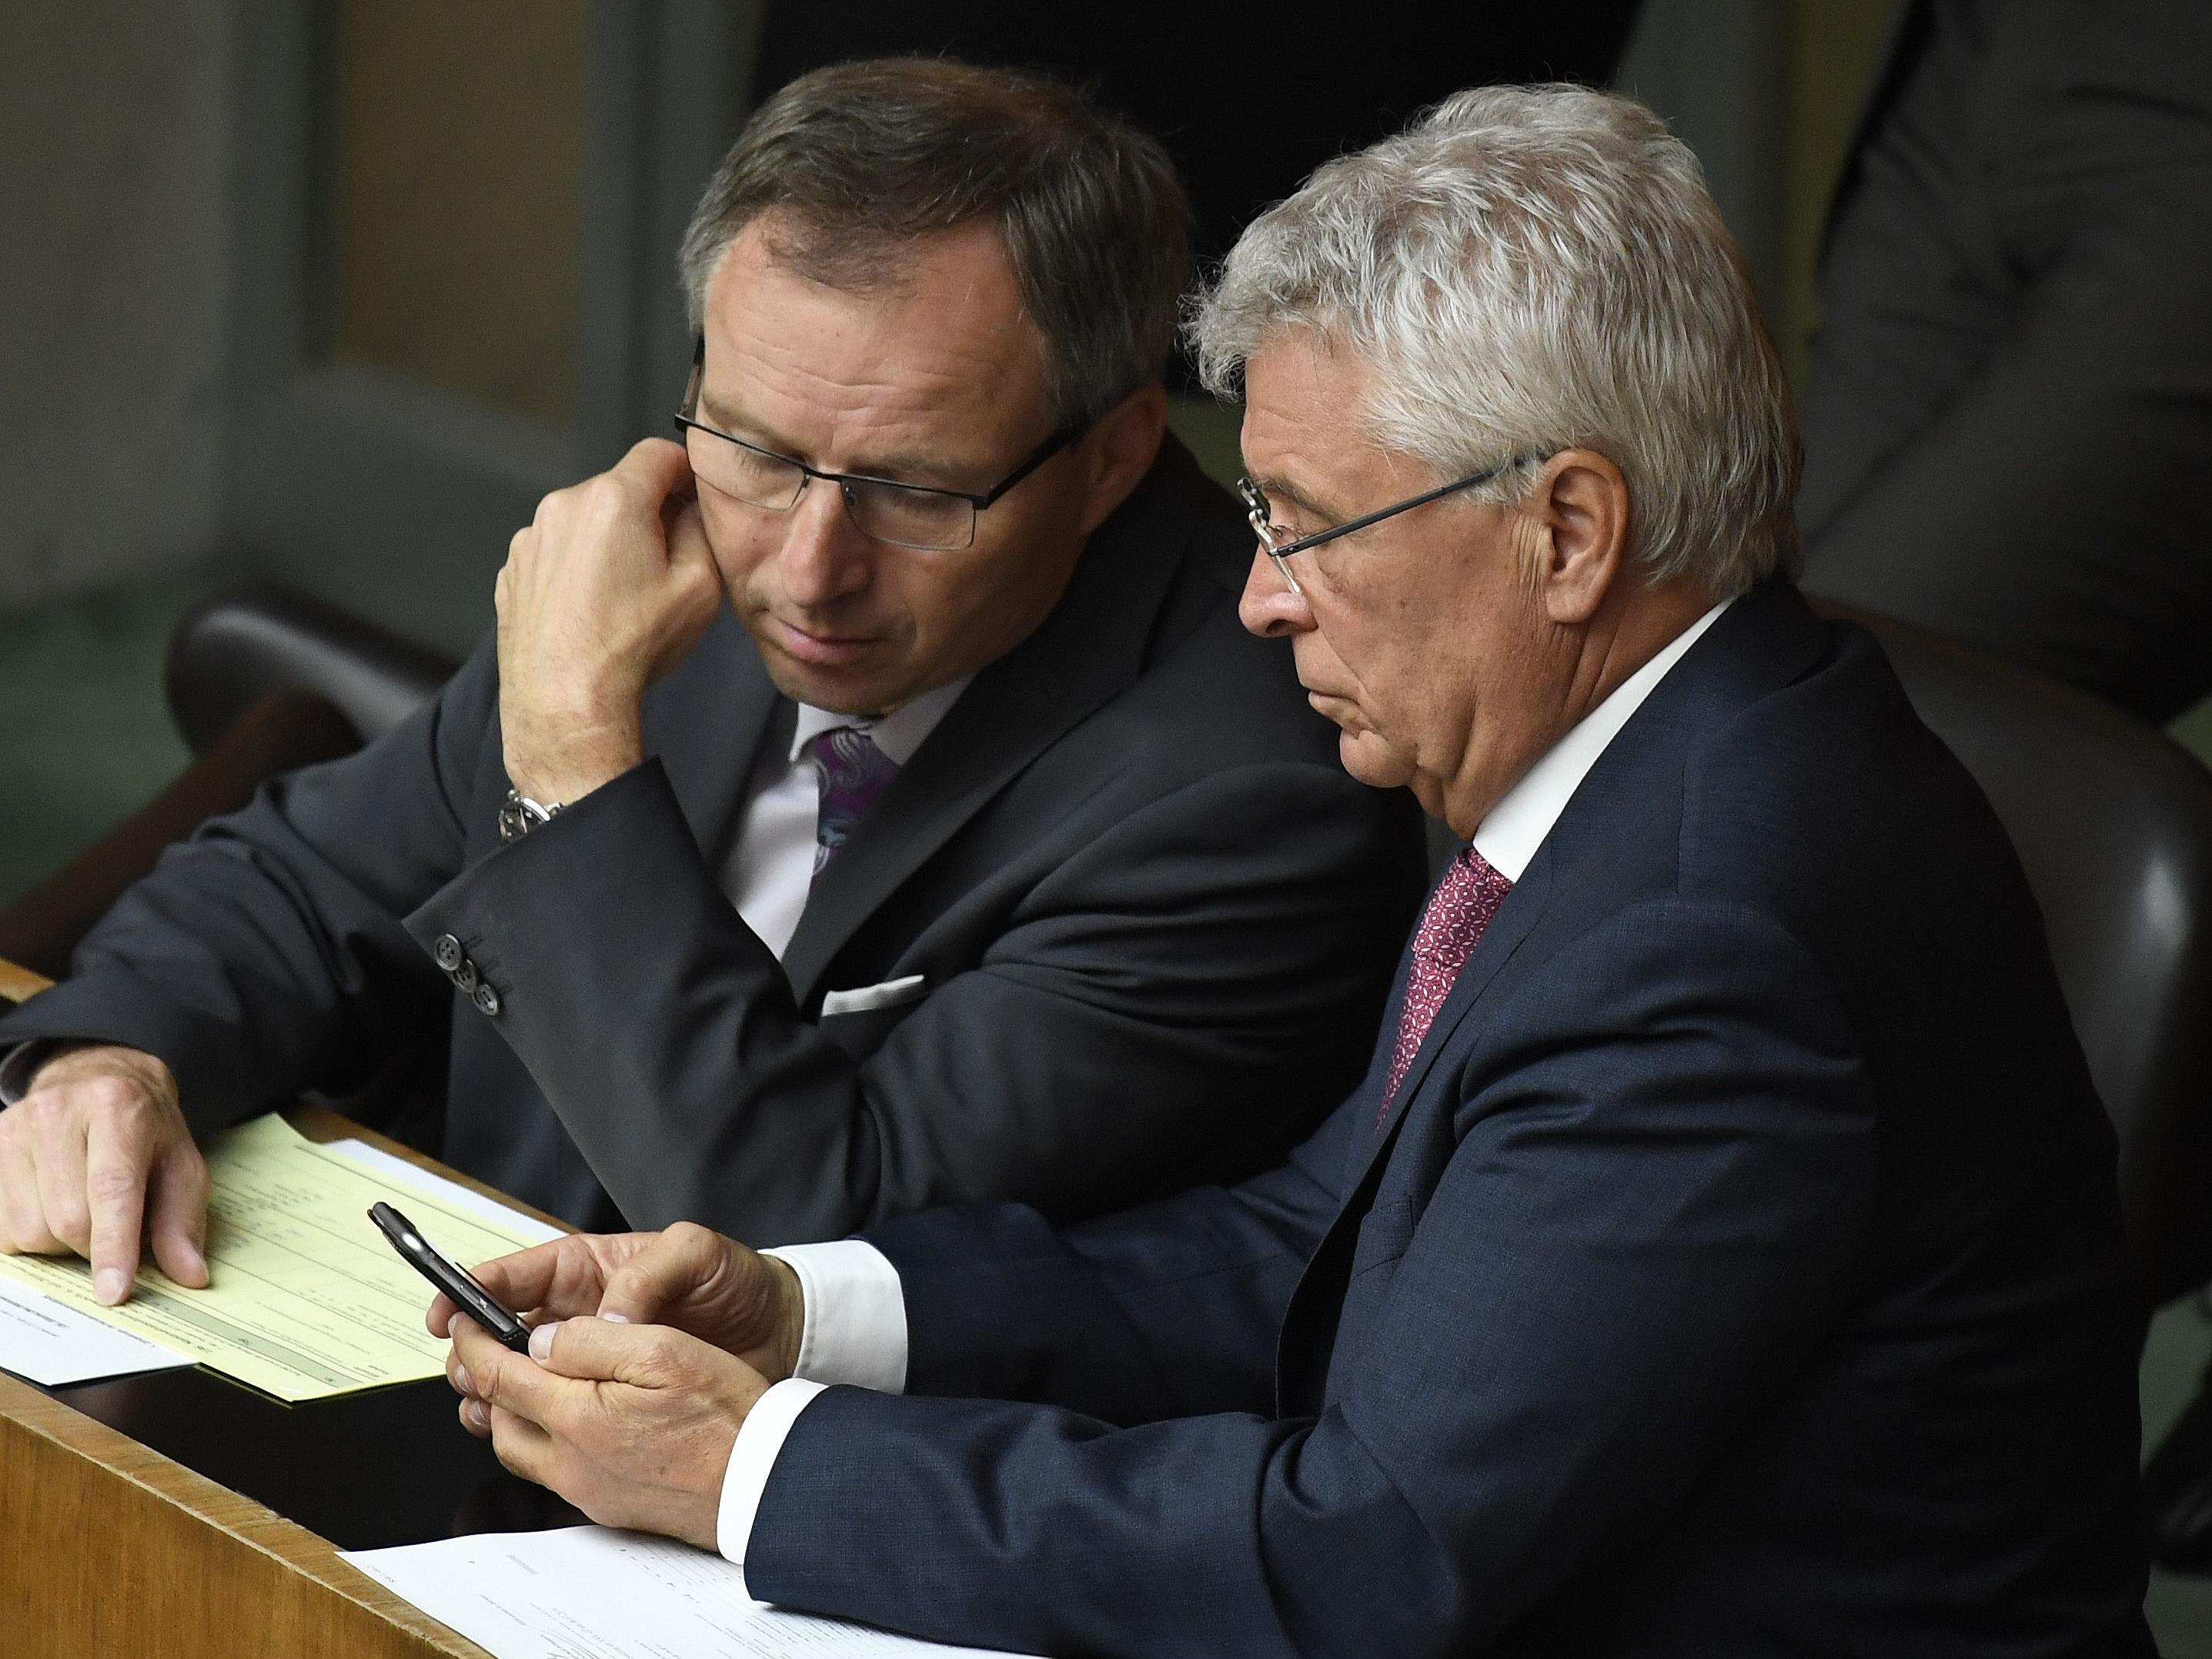 FPÖ-Abgeordneter Klinger (L.) übt Kritik an Regierungsausgaben